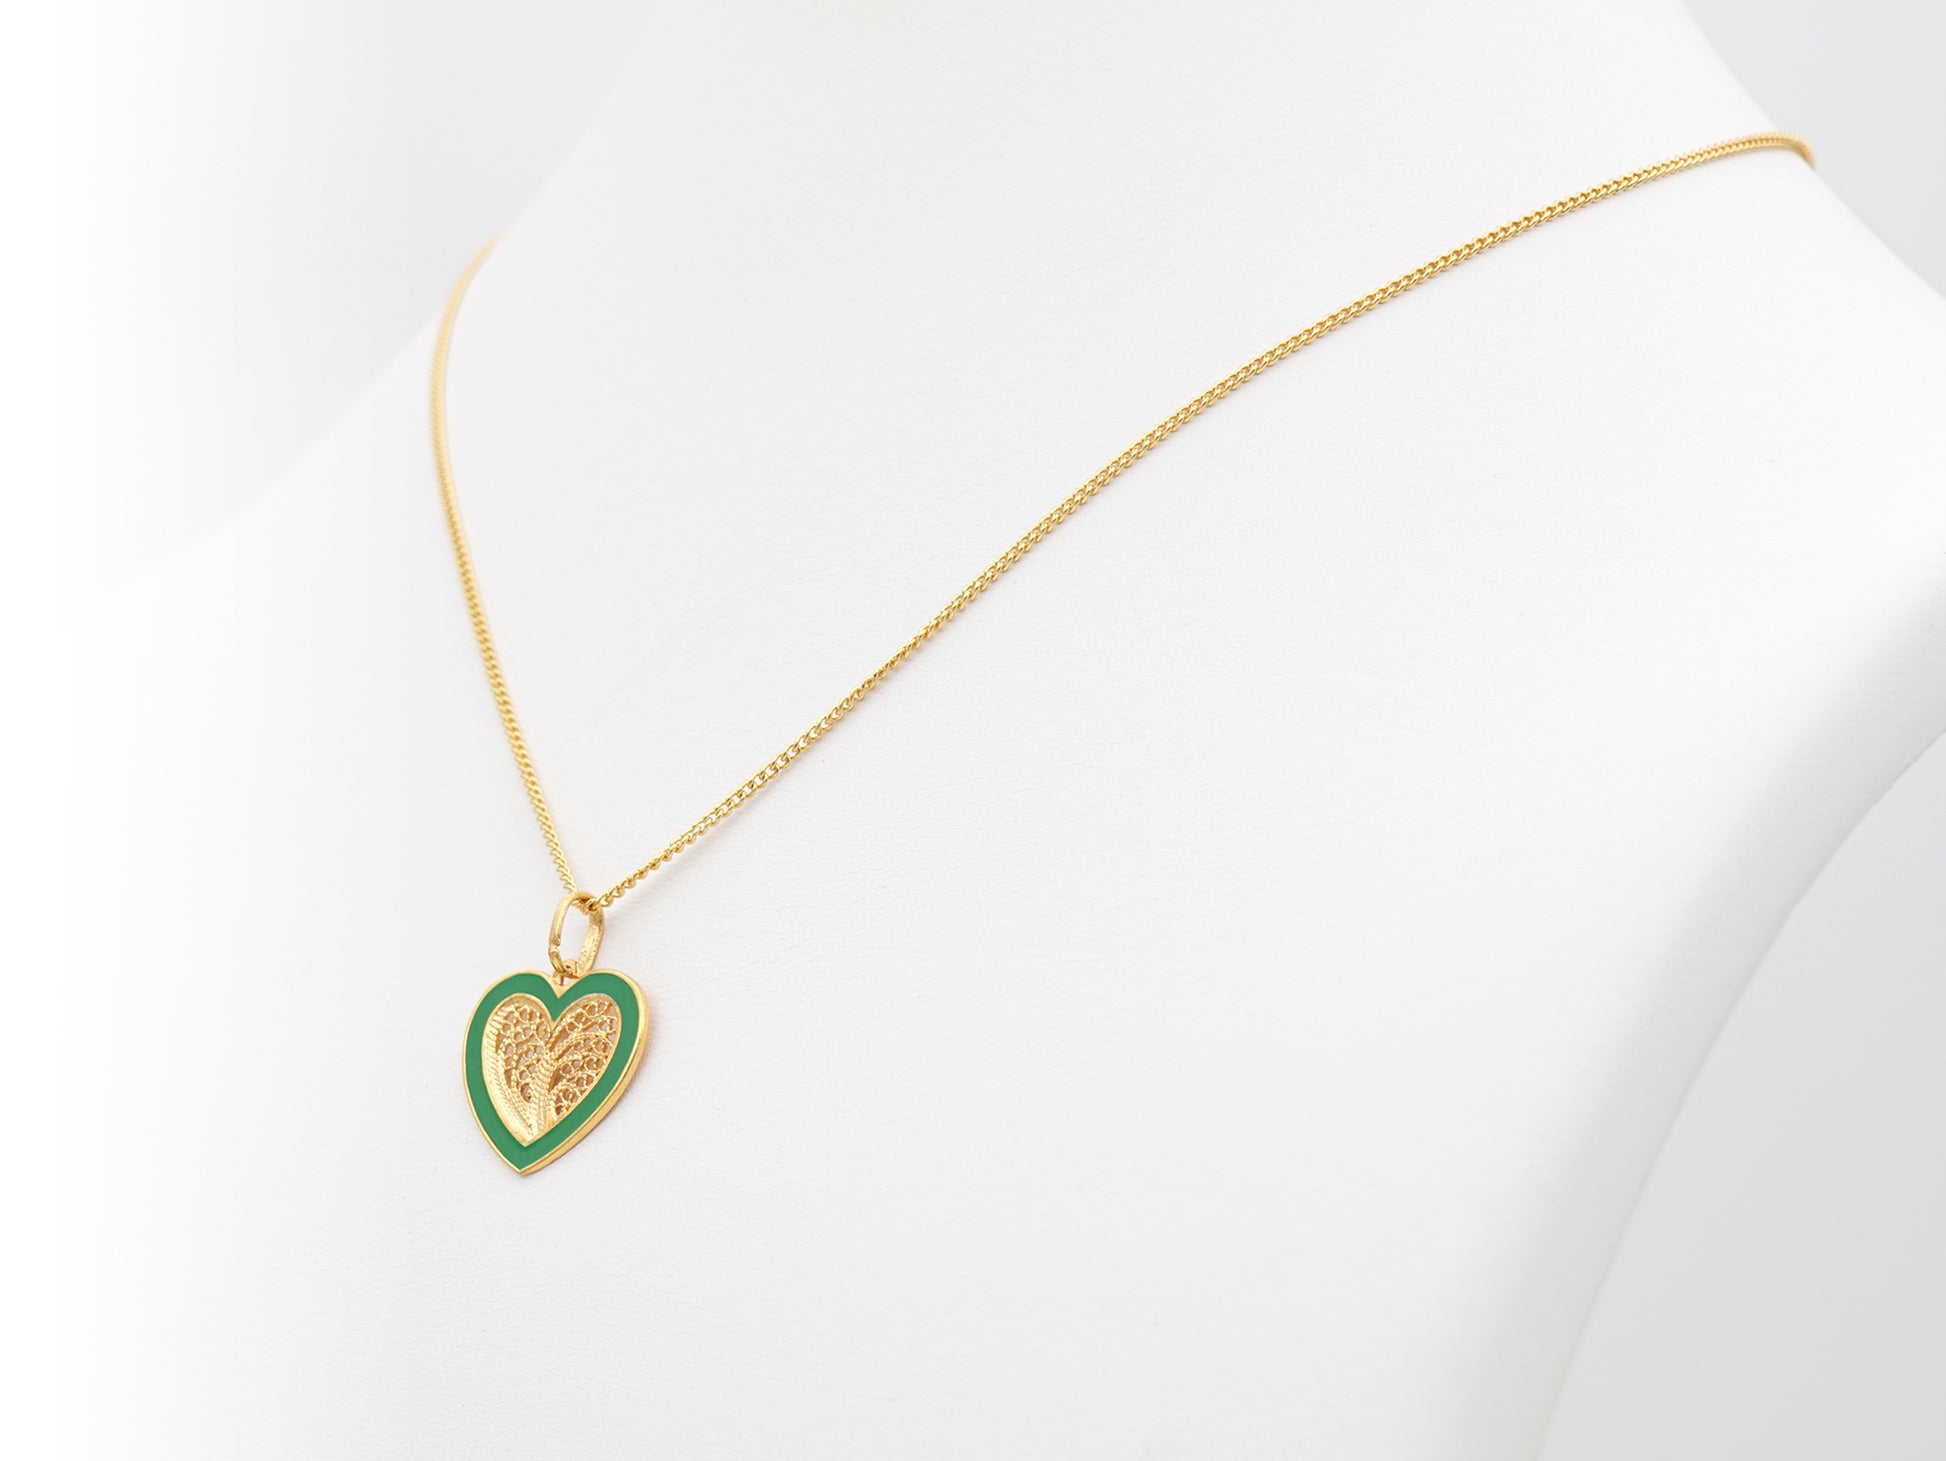 Colar Coração Médio Esmalte Verde, Filigrana Portuguesa, Prata de Lei 925 Dourada - Colar em exposição